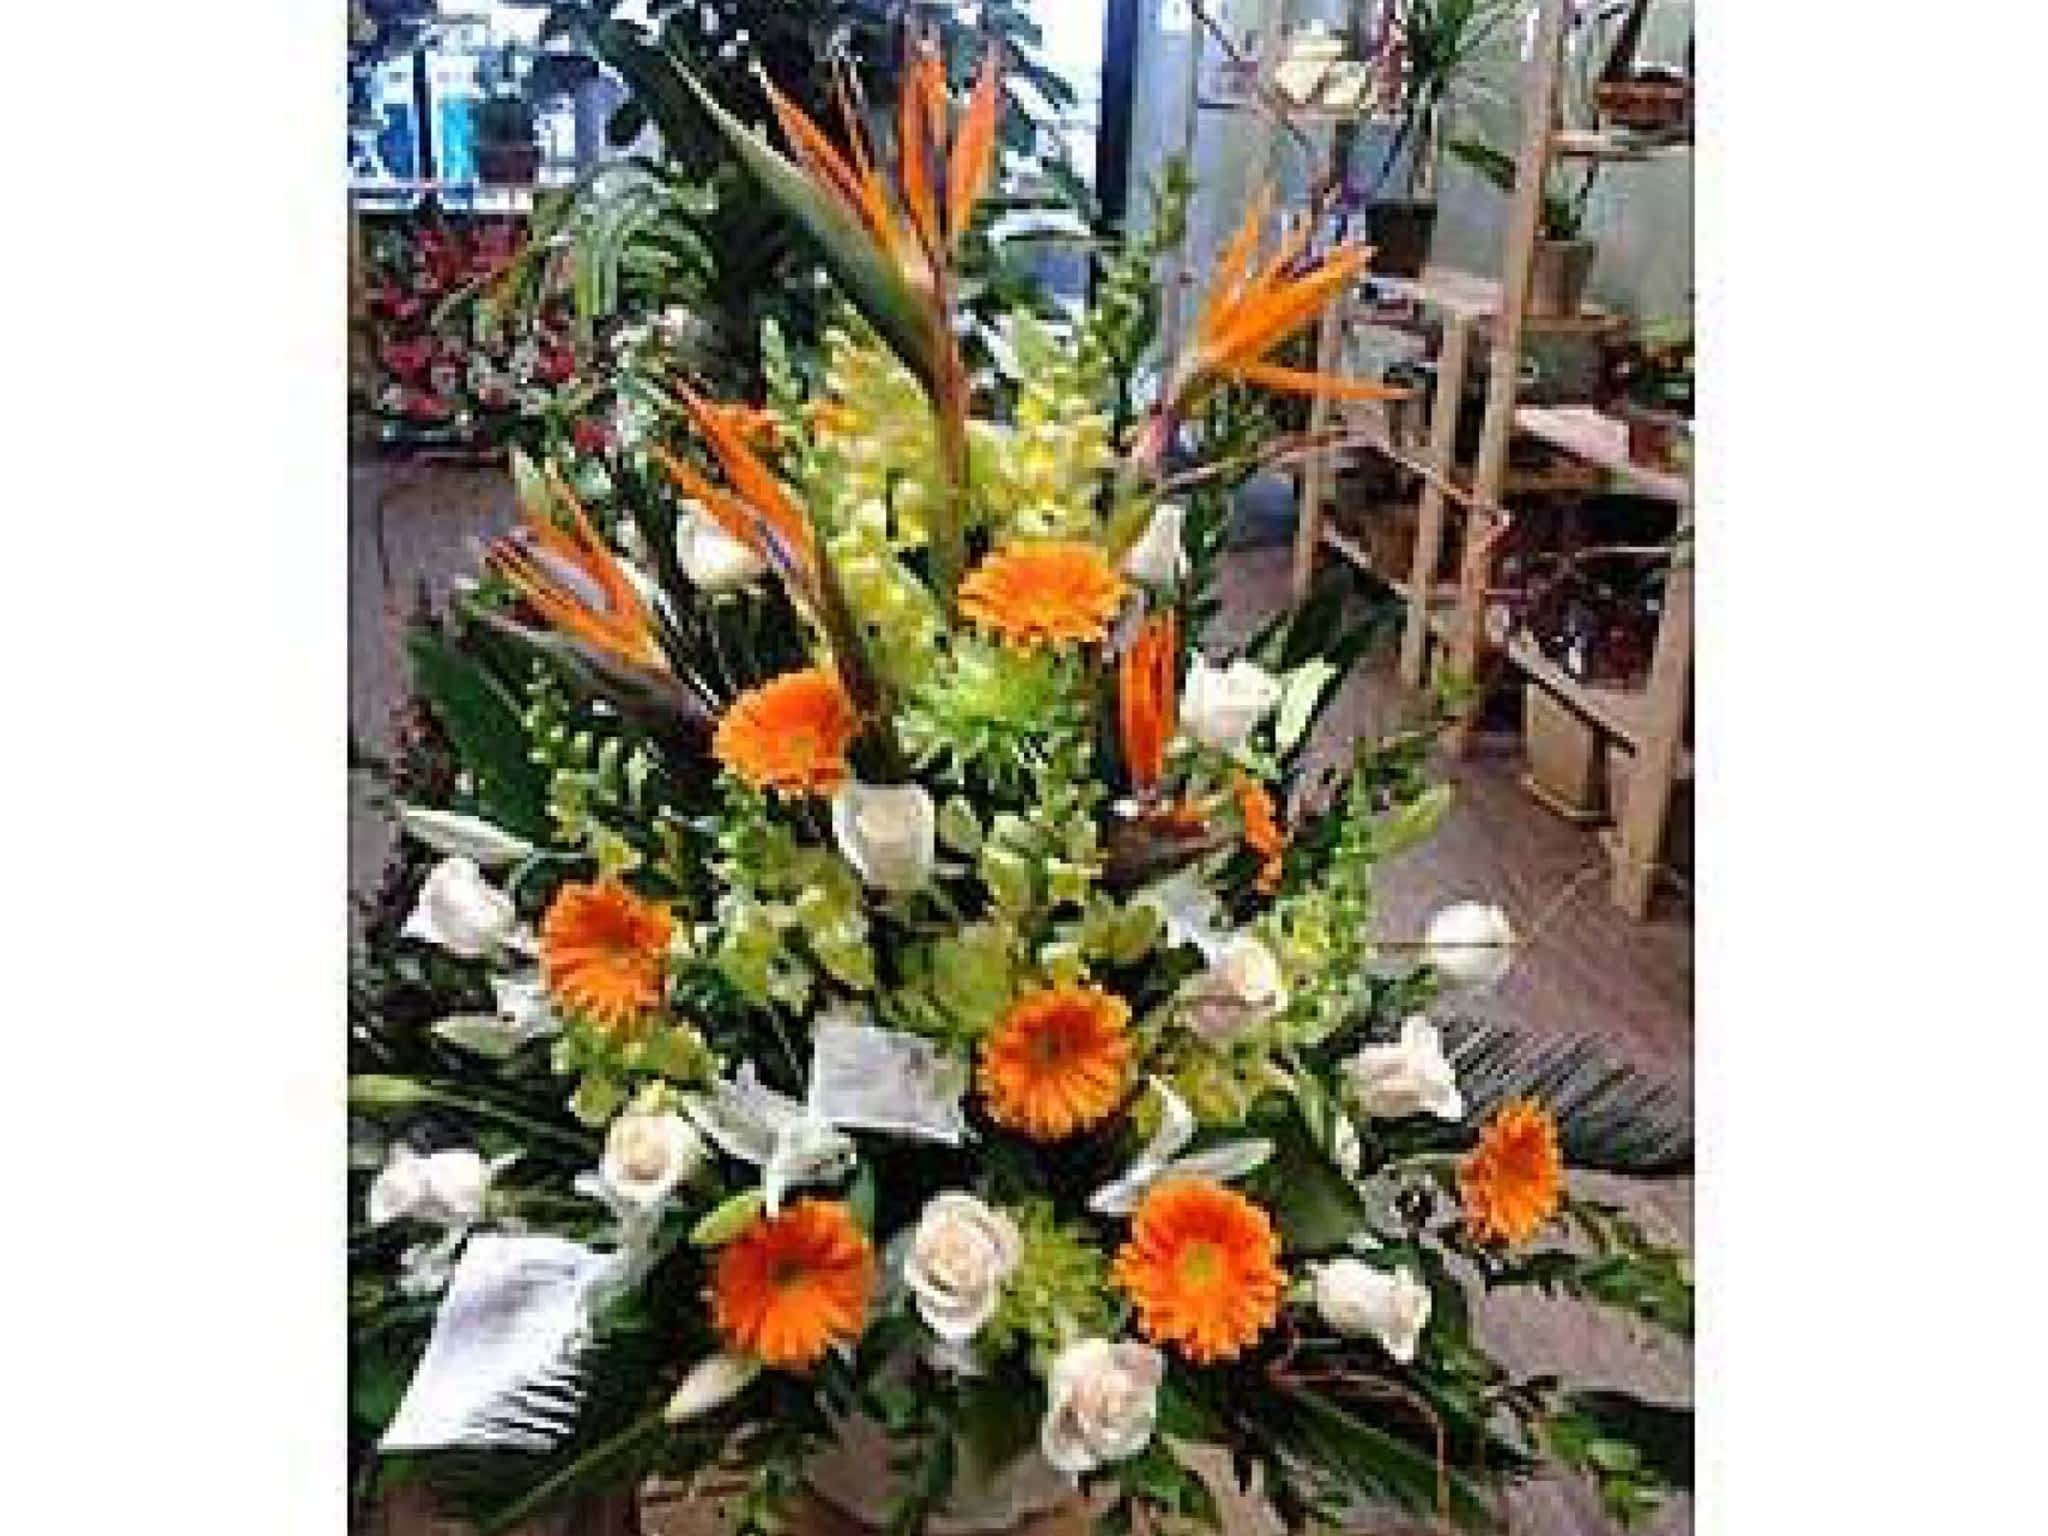 photo Applewood Village Florist